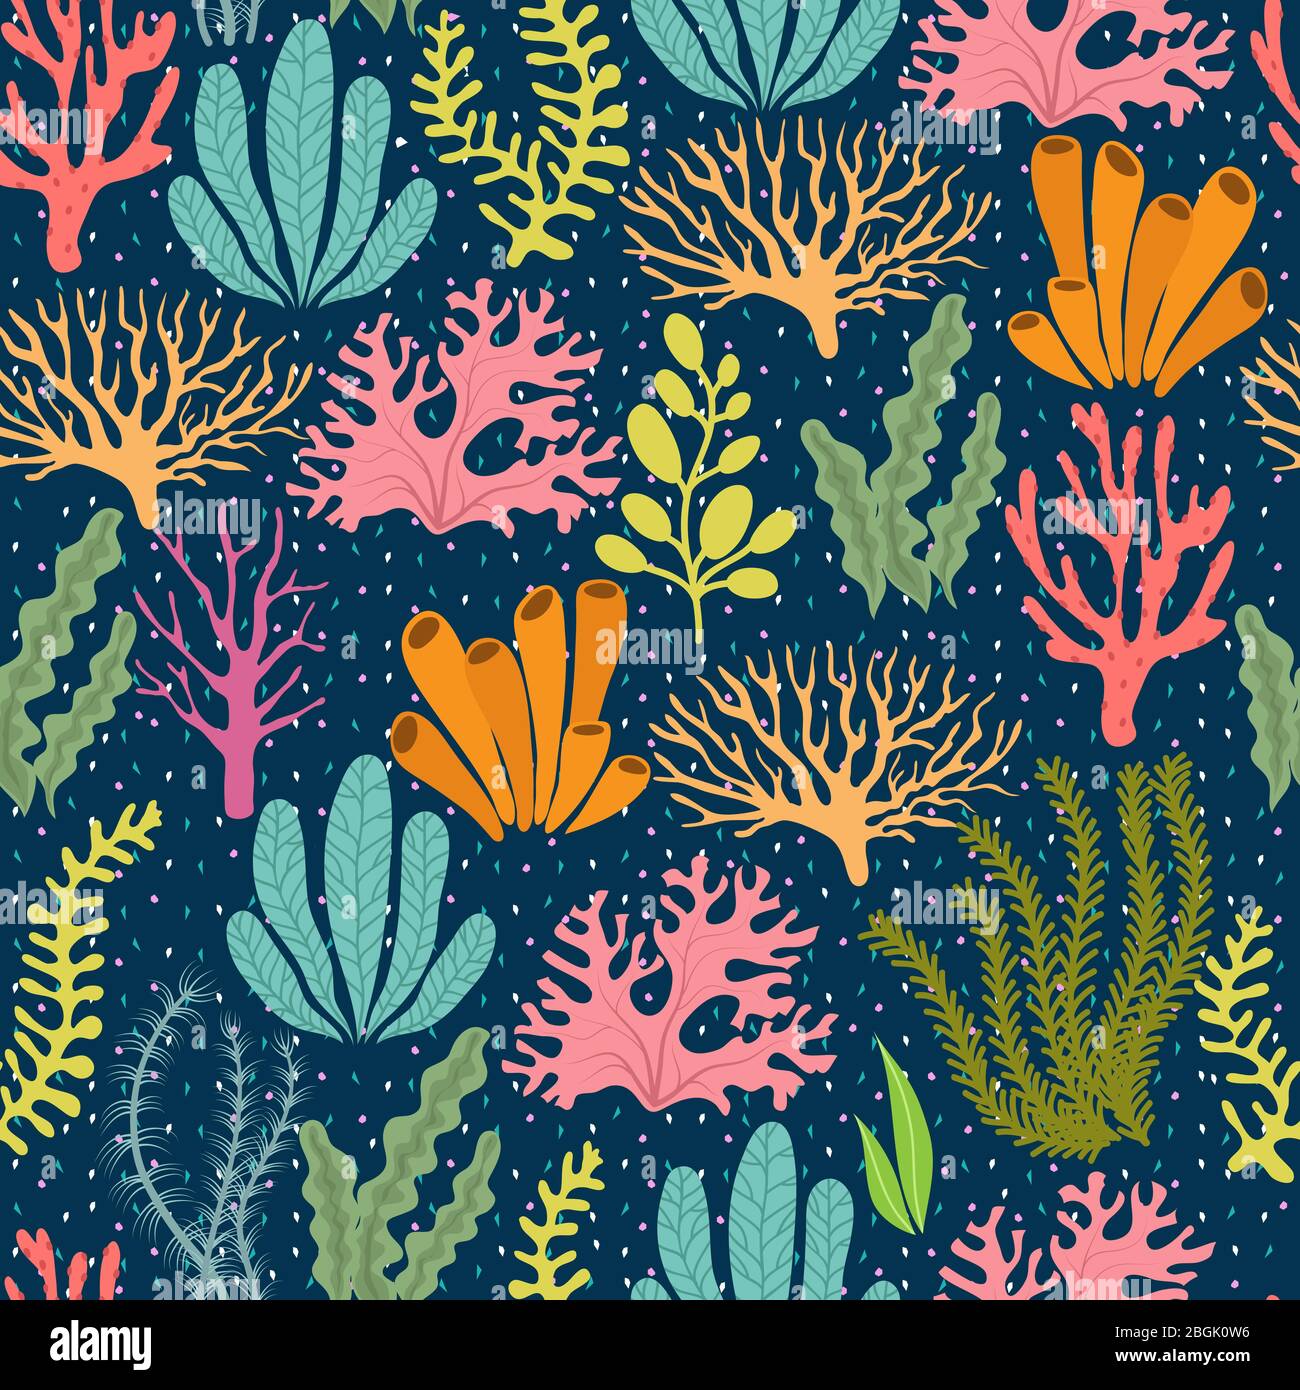 Seegras nahtloses Muster. Meerestiere marine Vektor endlose Textur. Unterwasser Riff Korallen und Algen Pflanzen Illustration Stock Vektor